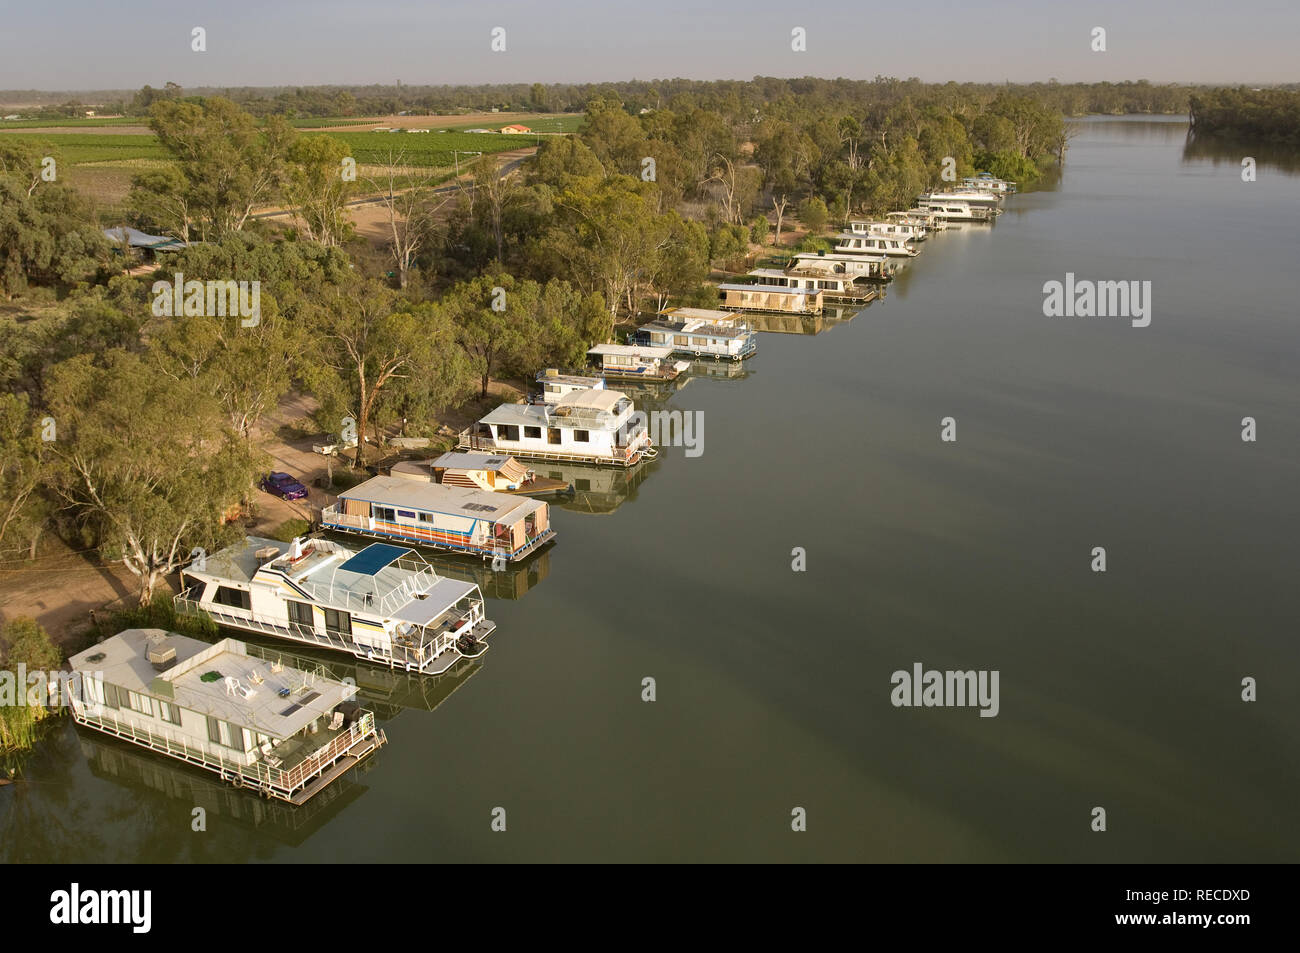 Immagine aerea di case galleggianti ormeggiate alon le rive del fiume Murray a monte di Milldura, a Bruce's Bend. Foto Stock